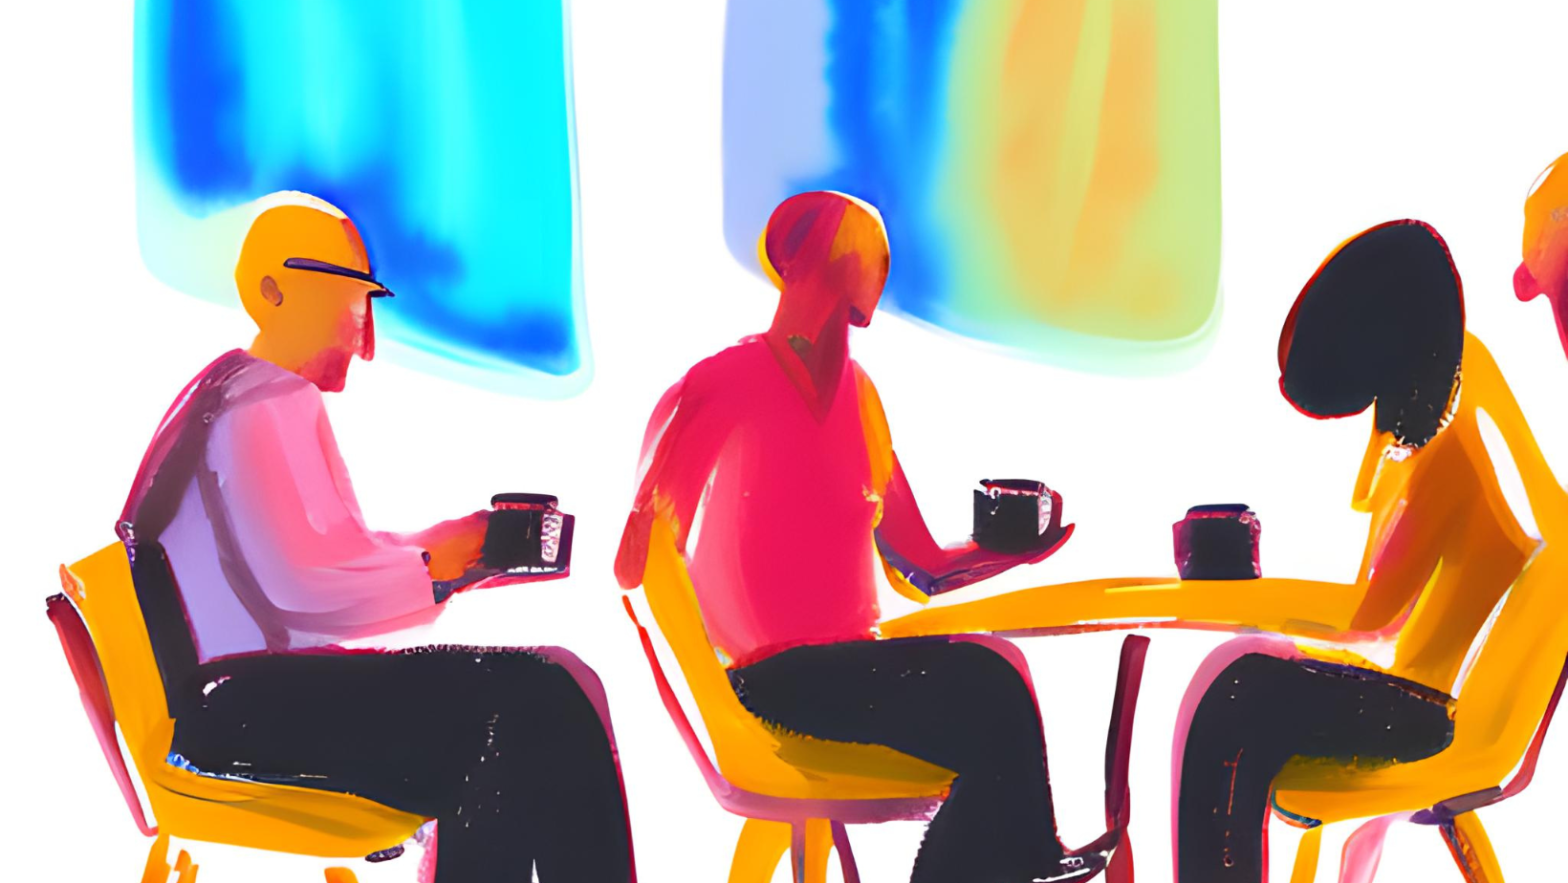 Obraz przedstawiający schematycznie trzy osoby siedzące przy stole i pijące kawę.